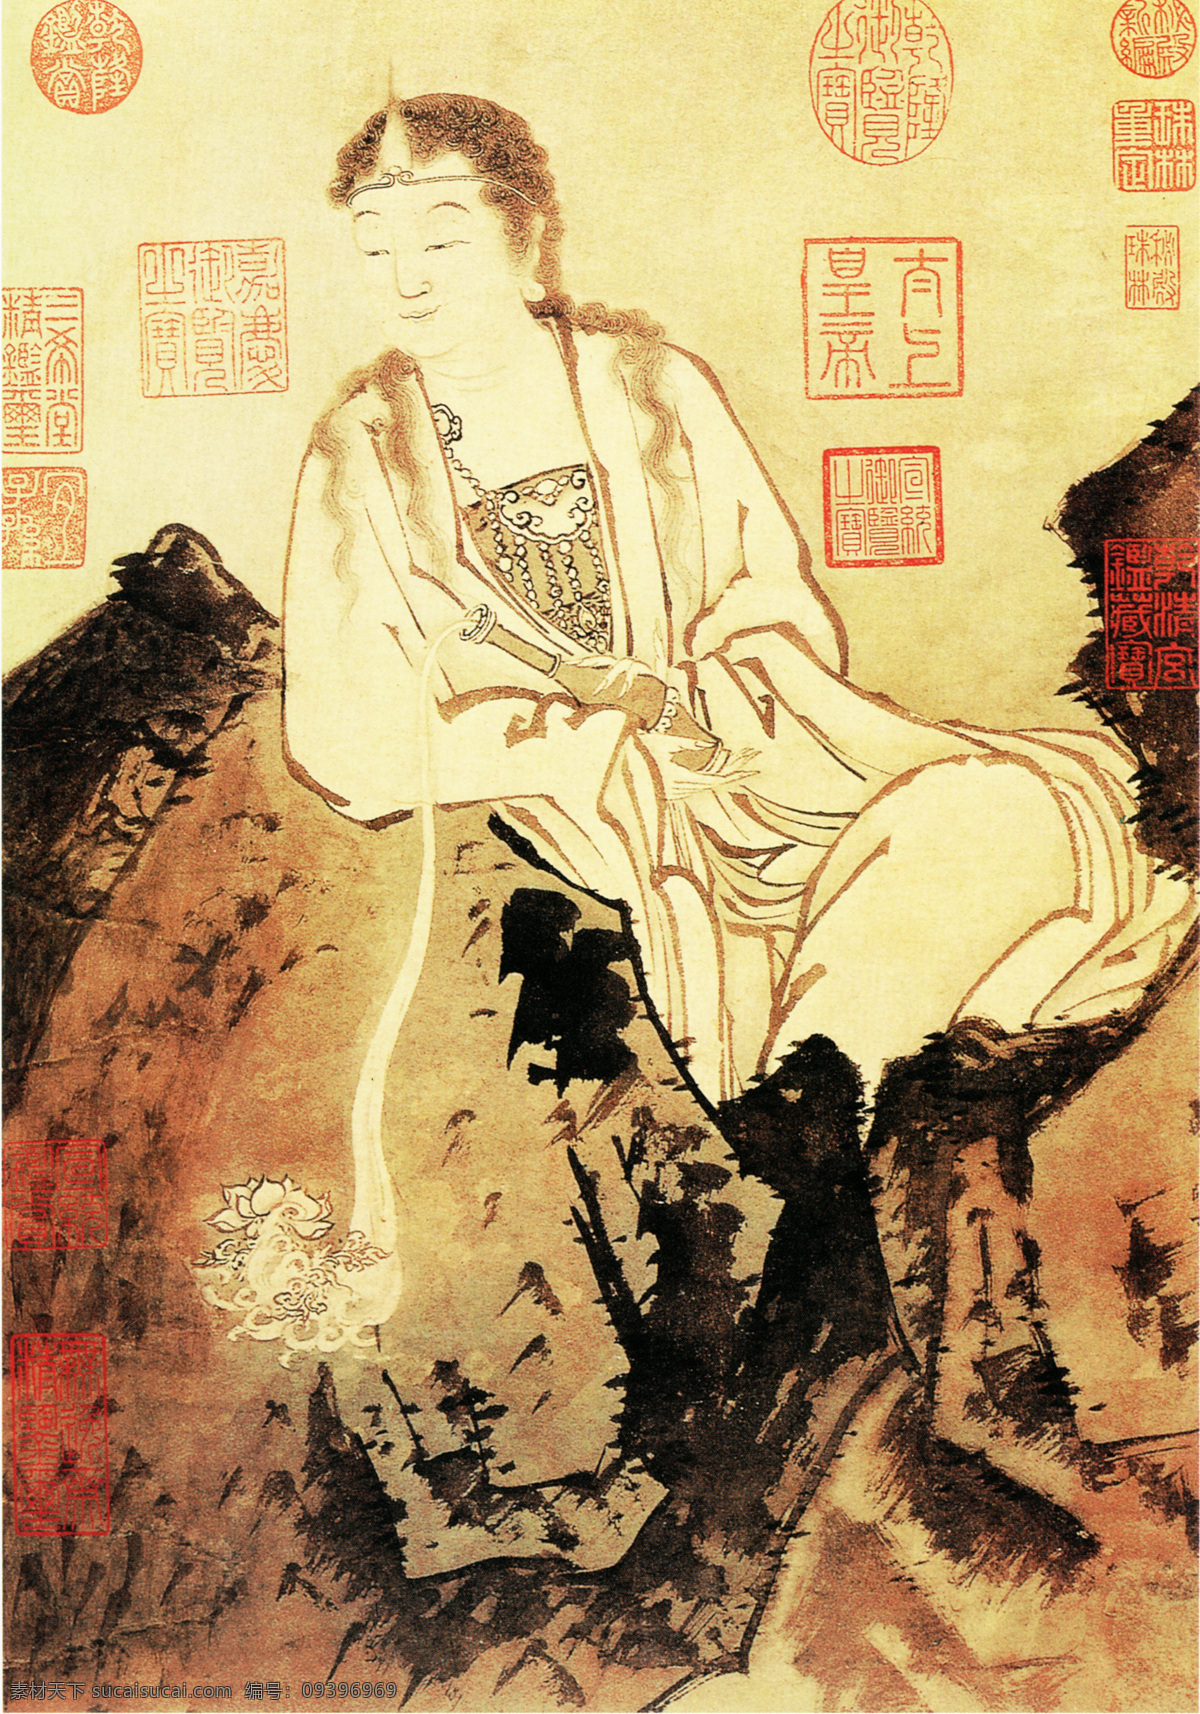 大士 大士像 观音 神仙佛像 中国古画 设计素材 古典藏画 书画美术 黄色